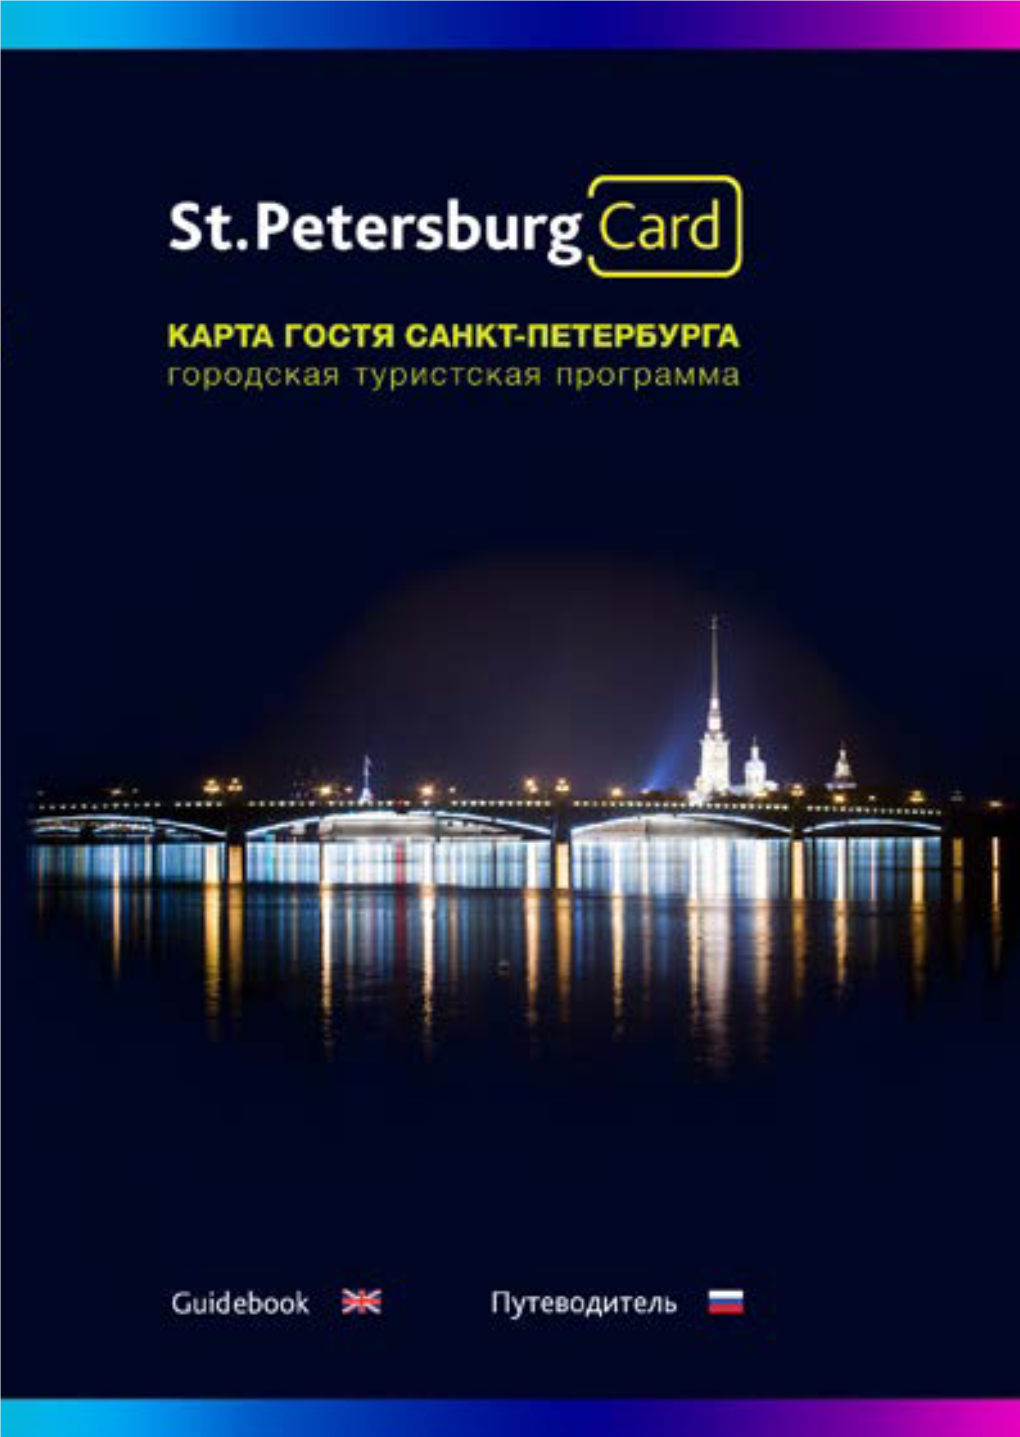 Petersburg Card 2016.Pdf